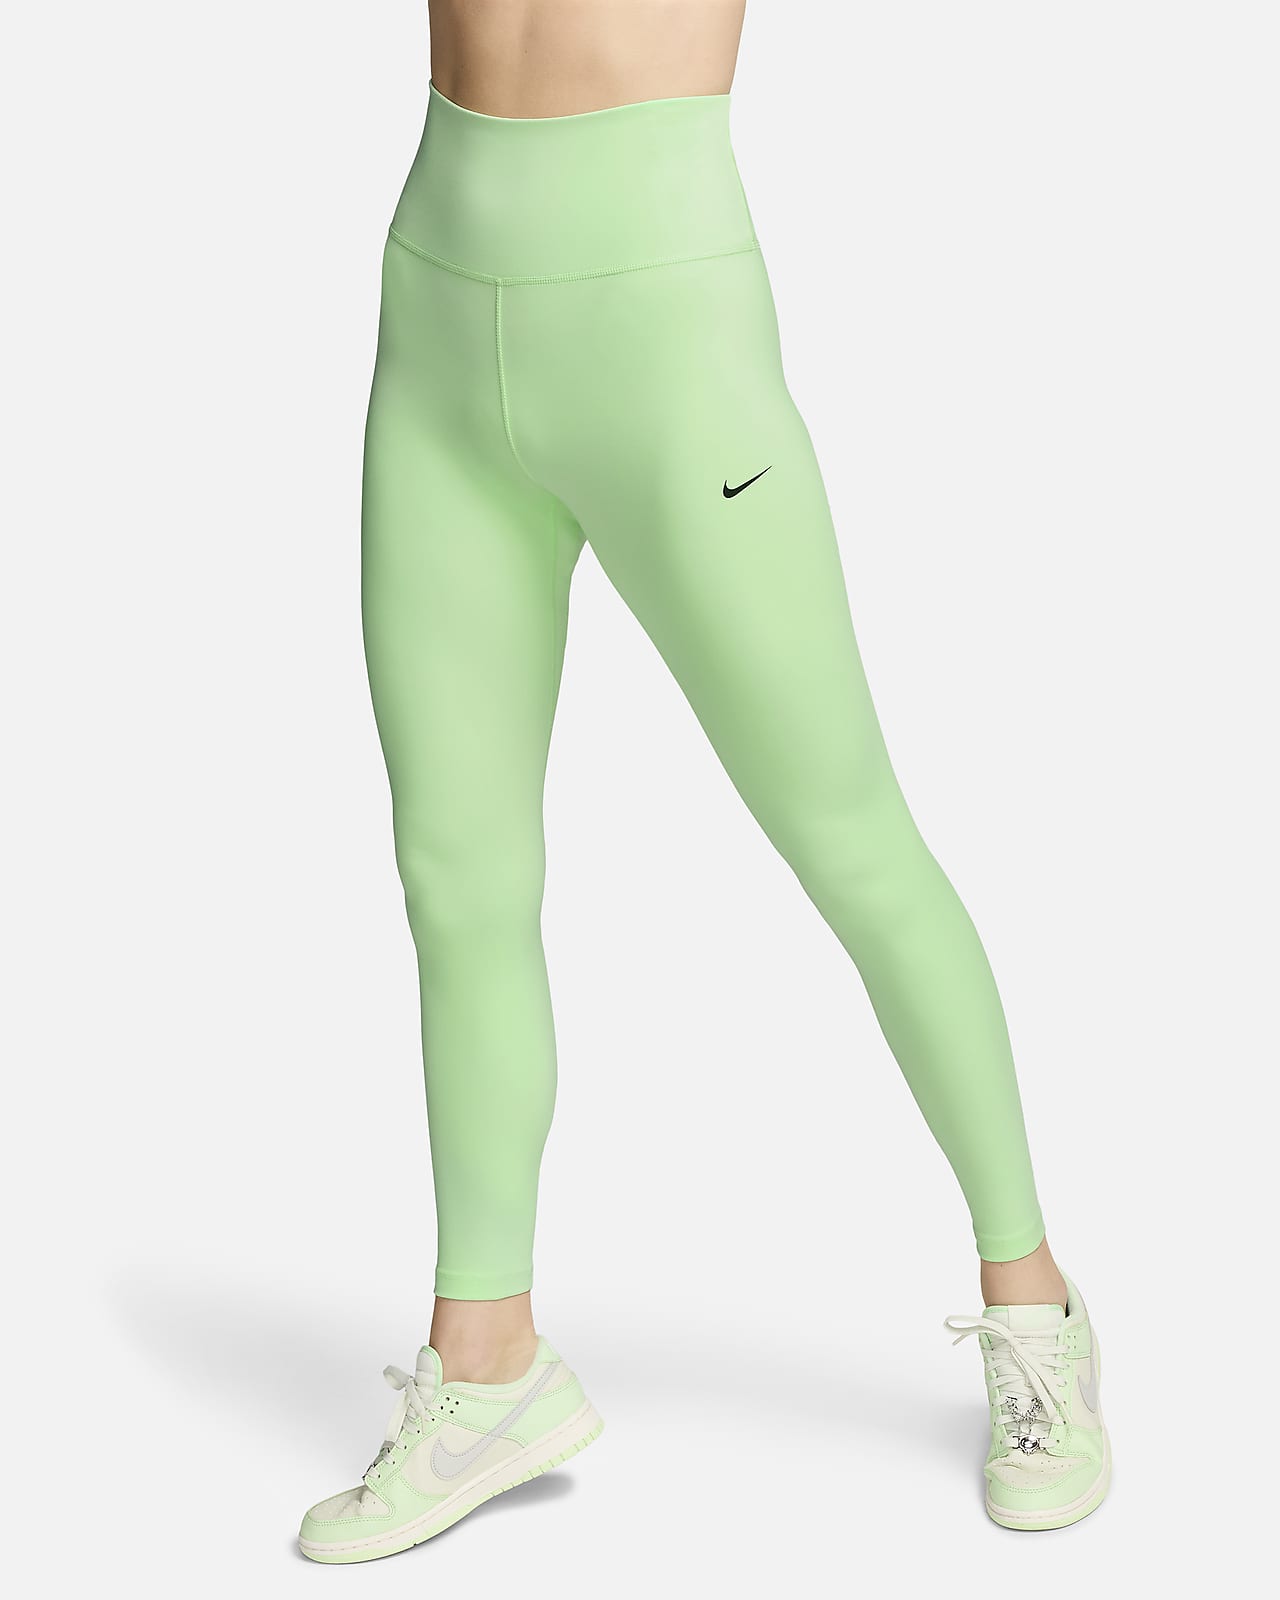 Leggings a tutta lunghezza a vita alta Nike One – Donna